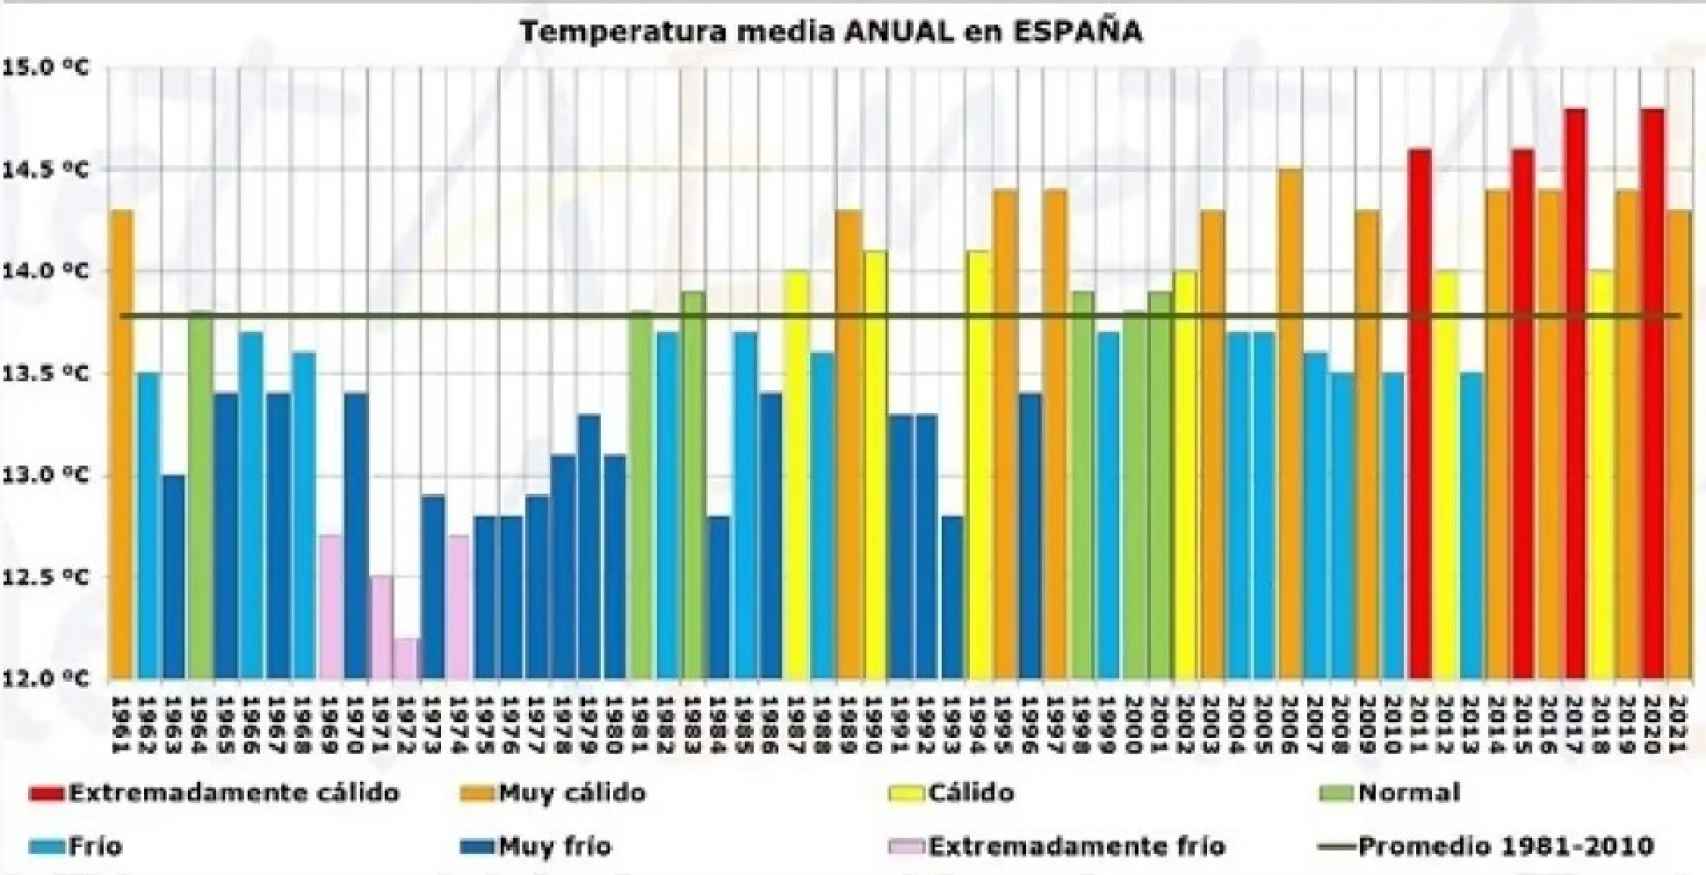 Serie de temperaturas medias anuales y carácter térmico en España desde 1961.